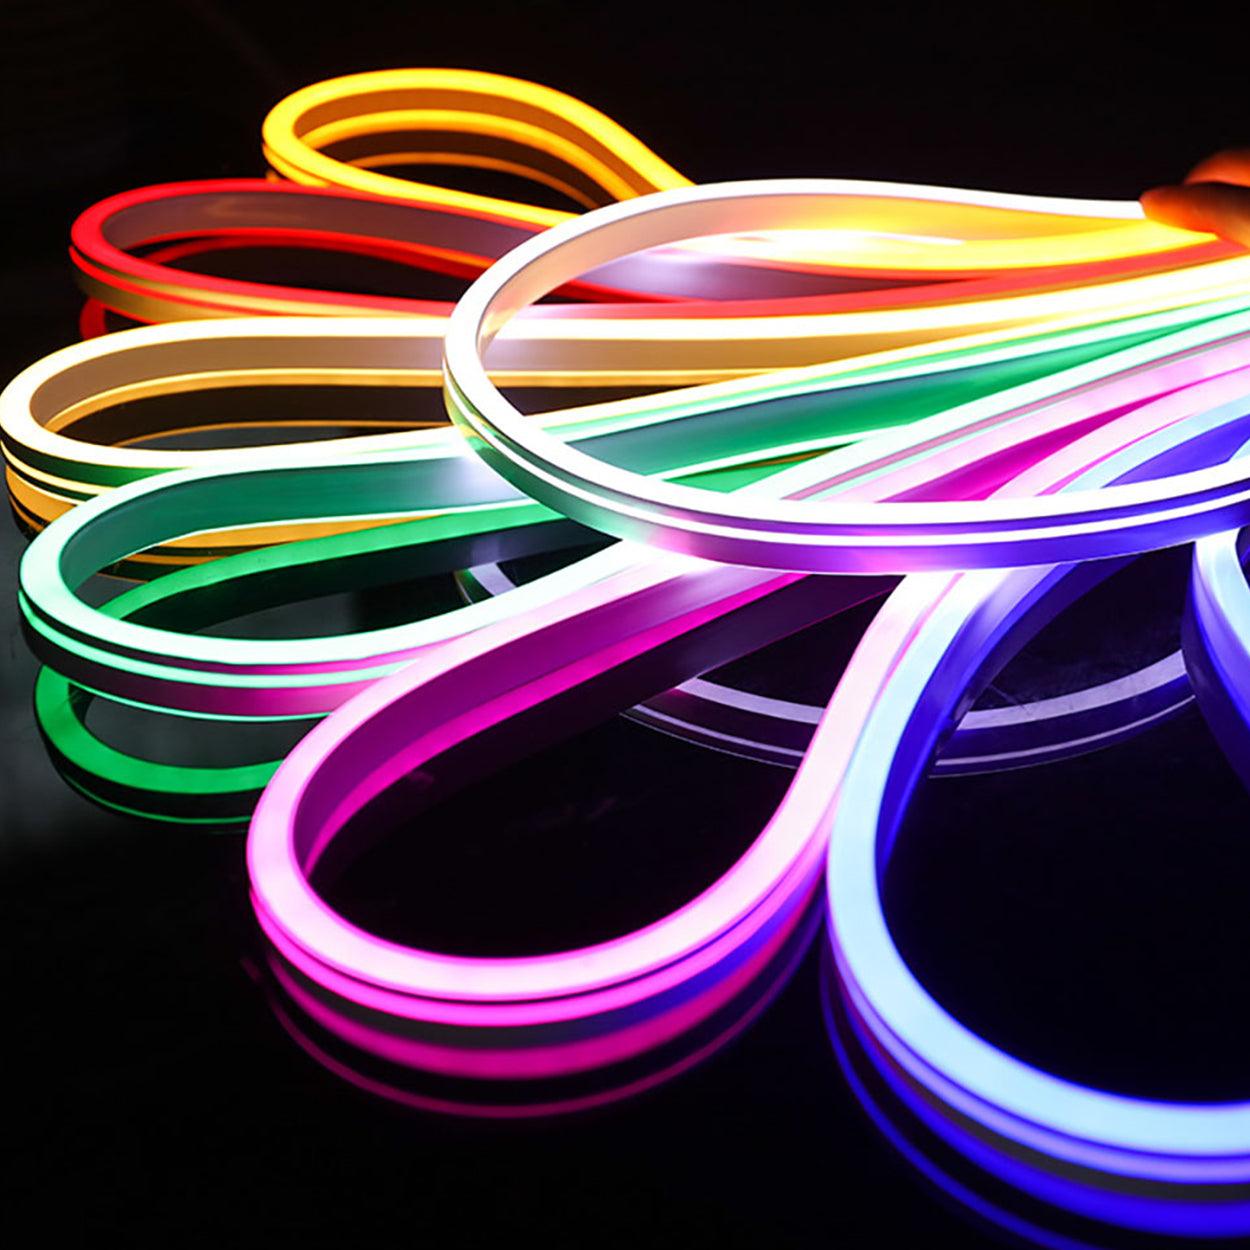 Led neon light vs led rope light vs led strip light